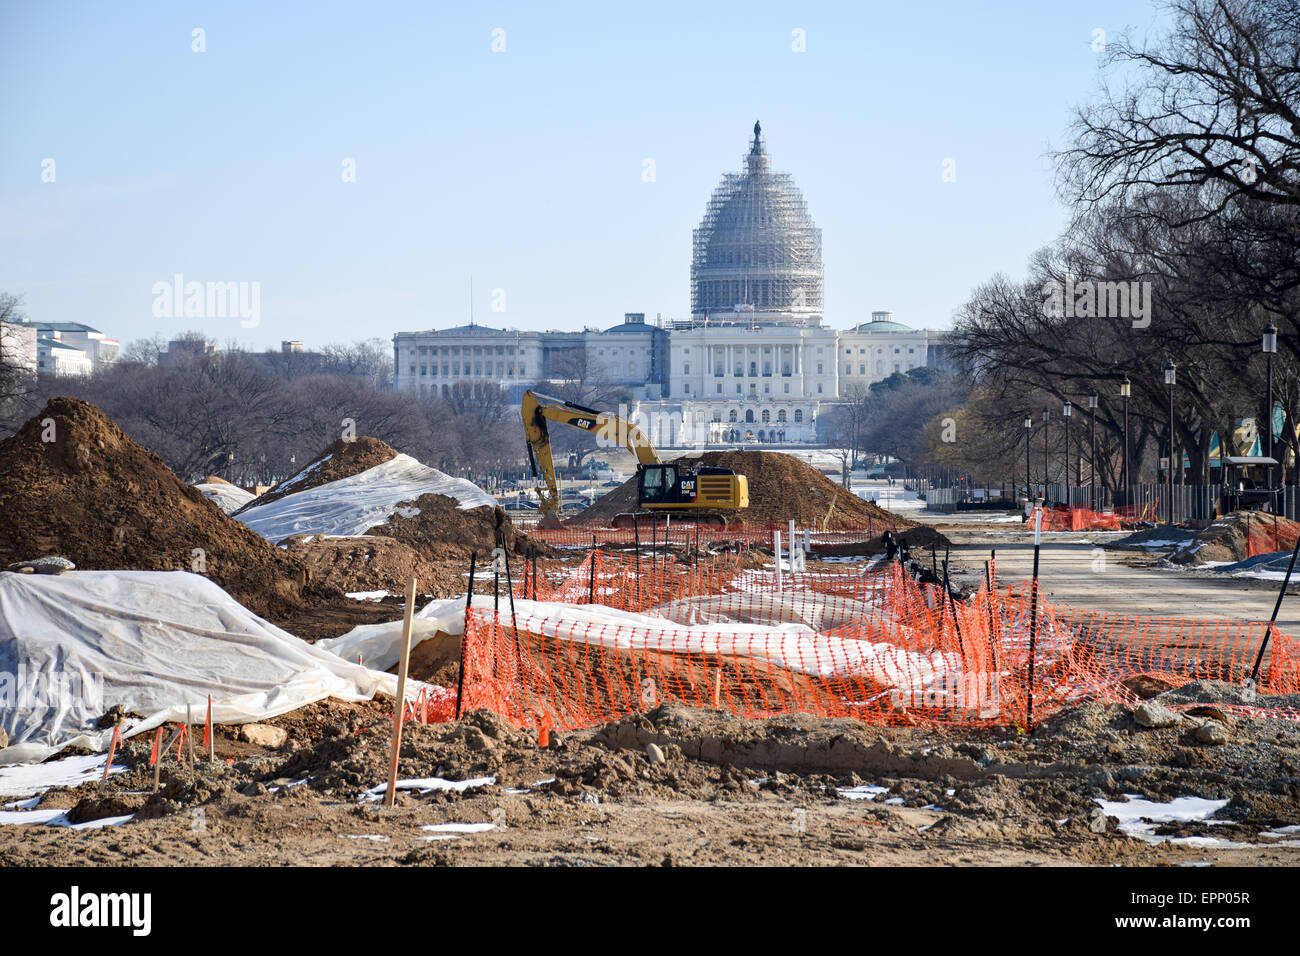 WASHINGTON DC, USA - Erneuerungen auf einen Abschnitt des östlichen Ende der National Mall in Washington DC, mit der Kuppel des U.S. Capitol Gebäude im Hintergrund mit Gerüsten bedeckt, wie es seine eigenen Reparaturen unterzogen wird. Stockfoto